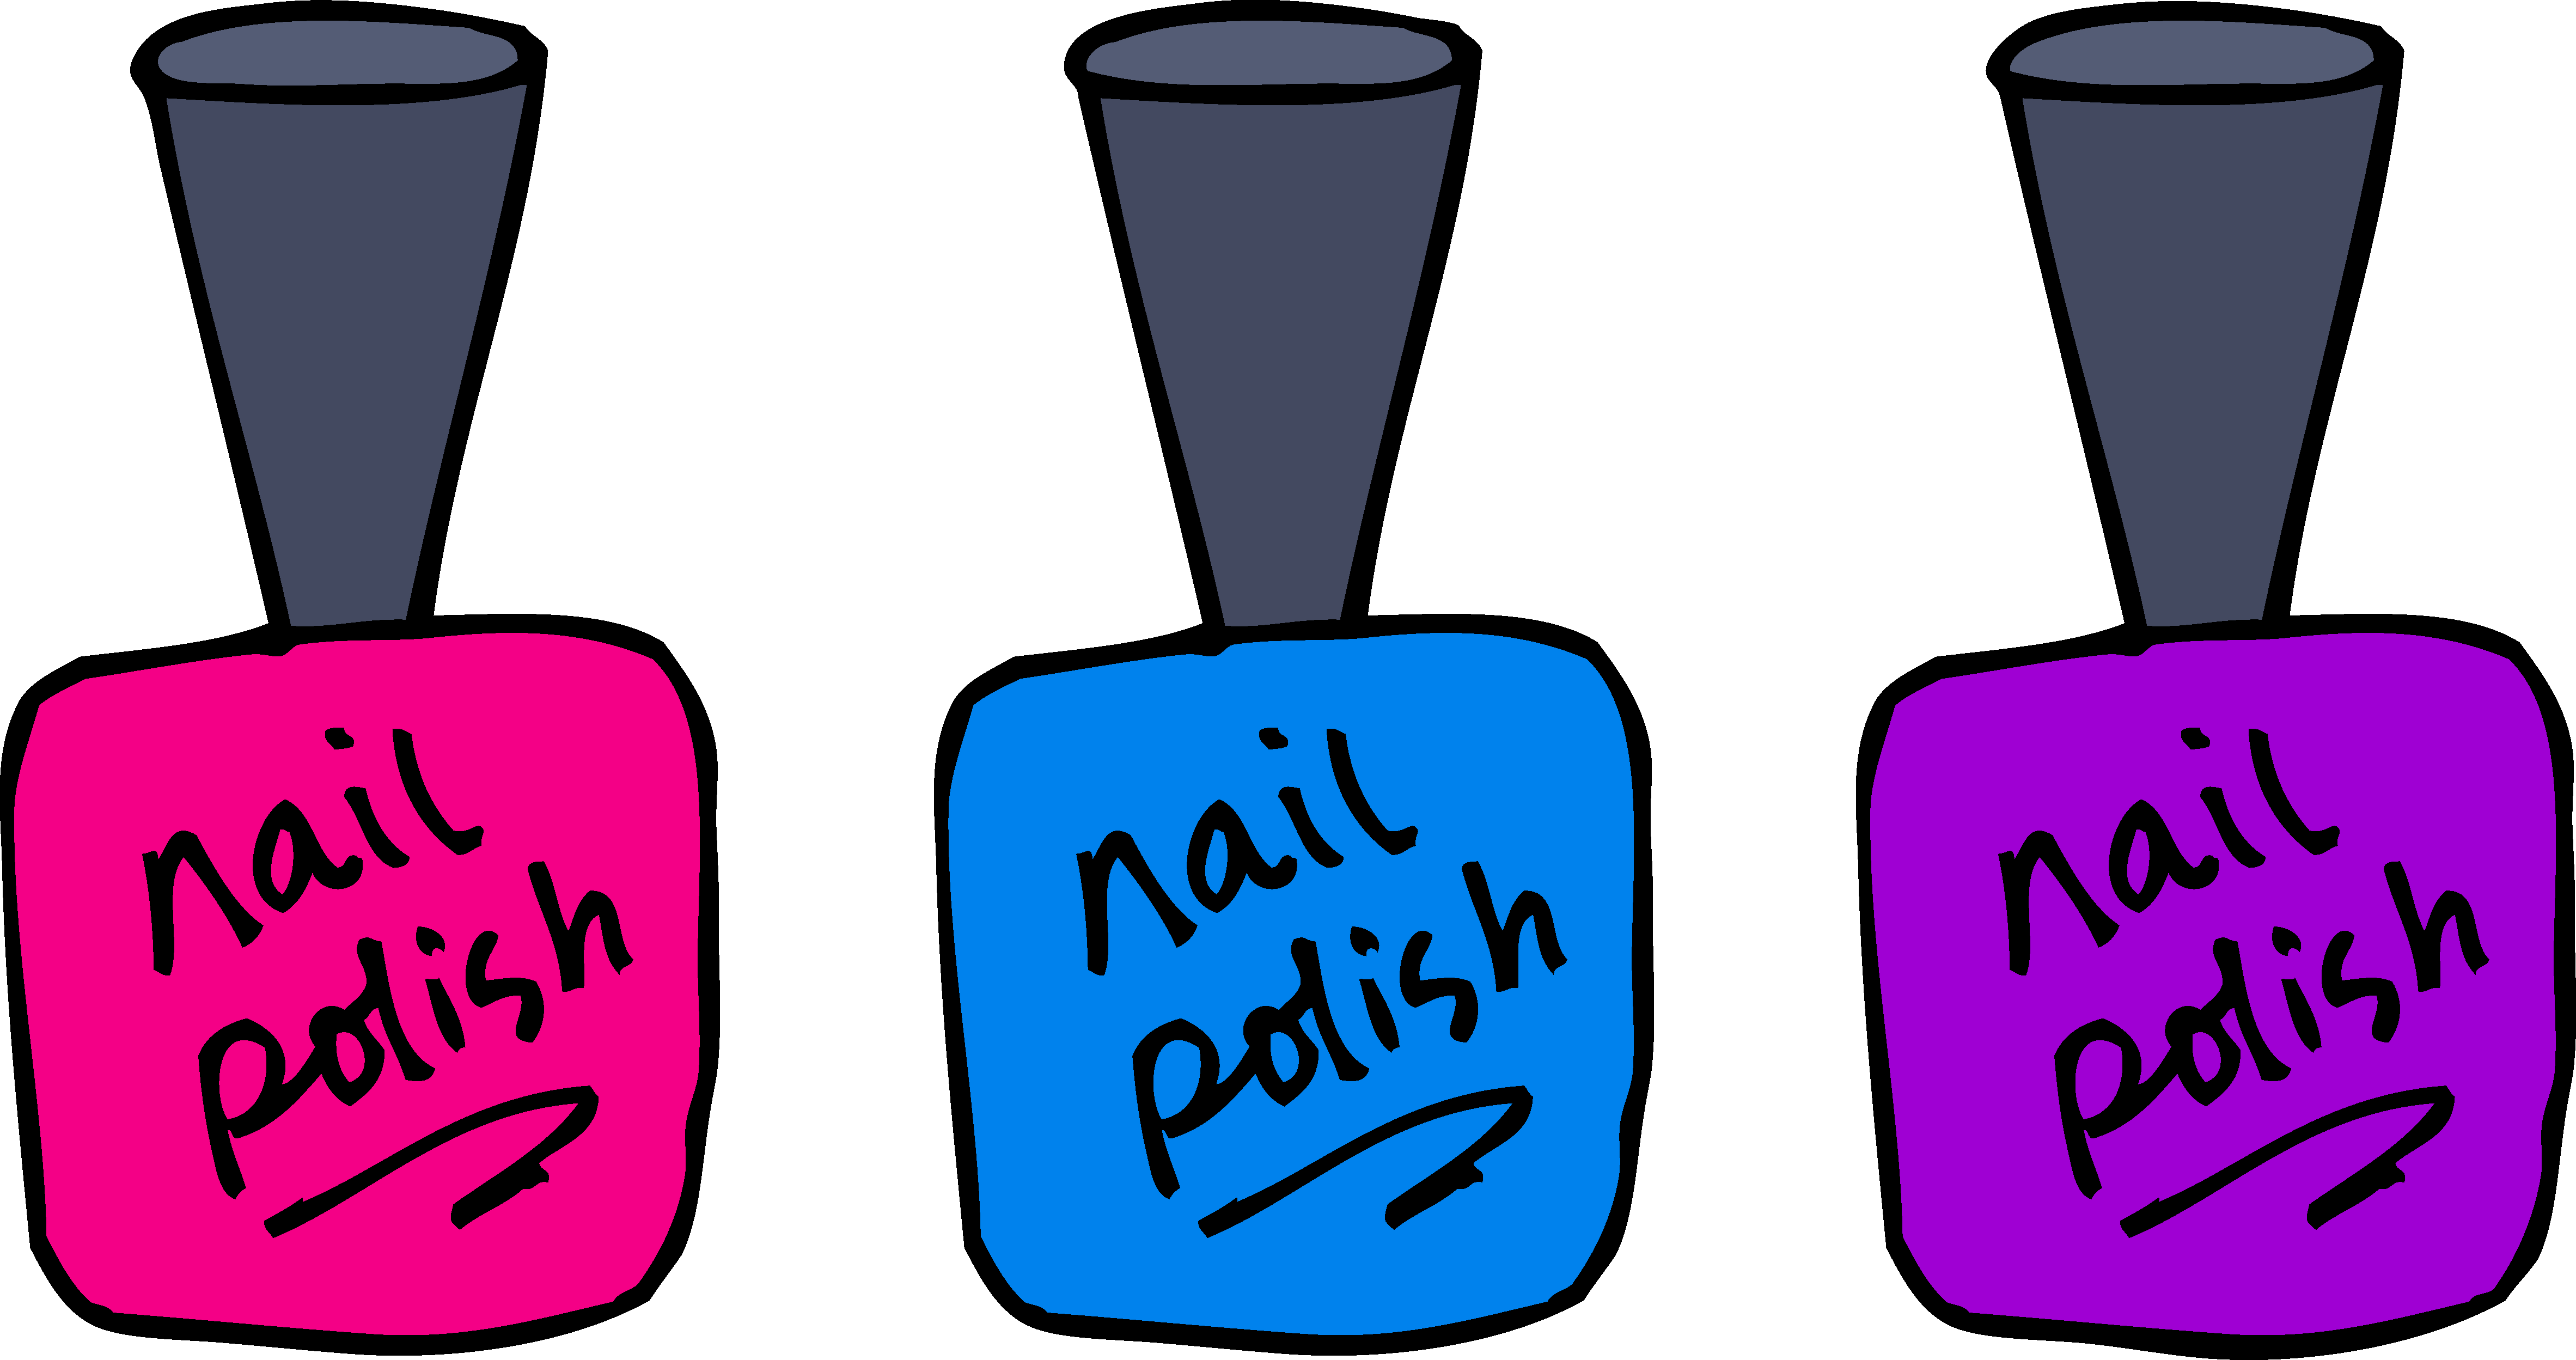 nail polish art decal